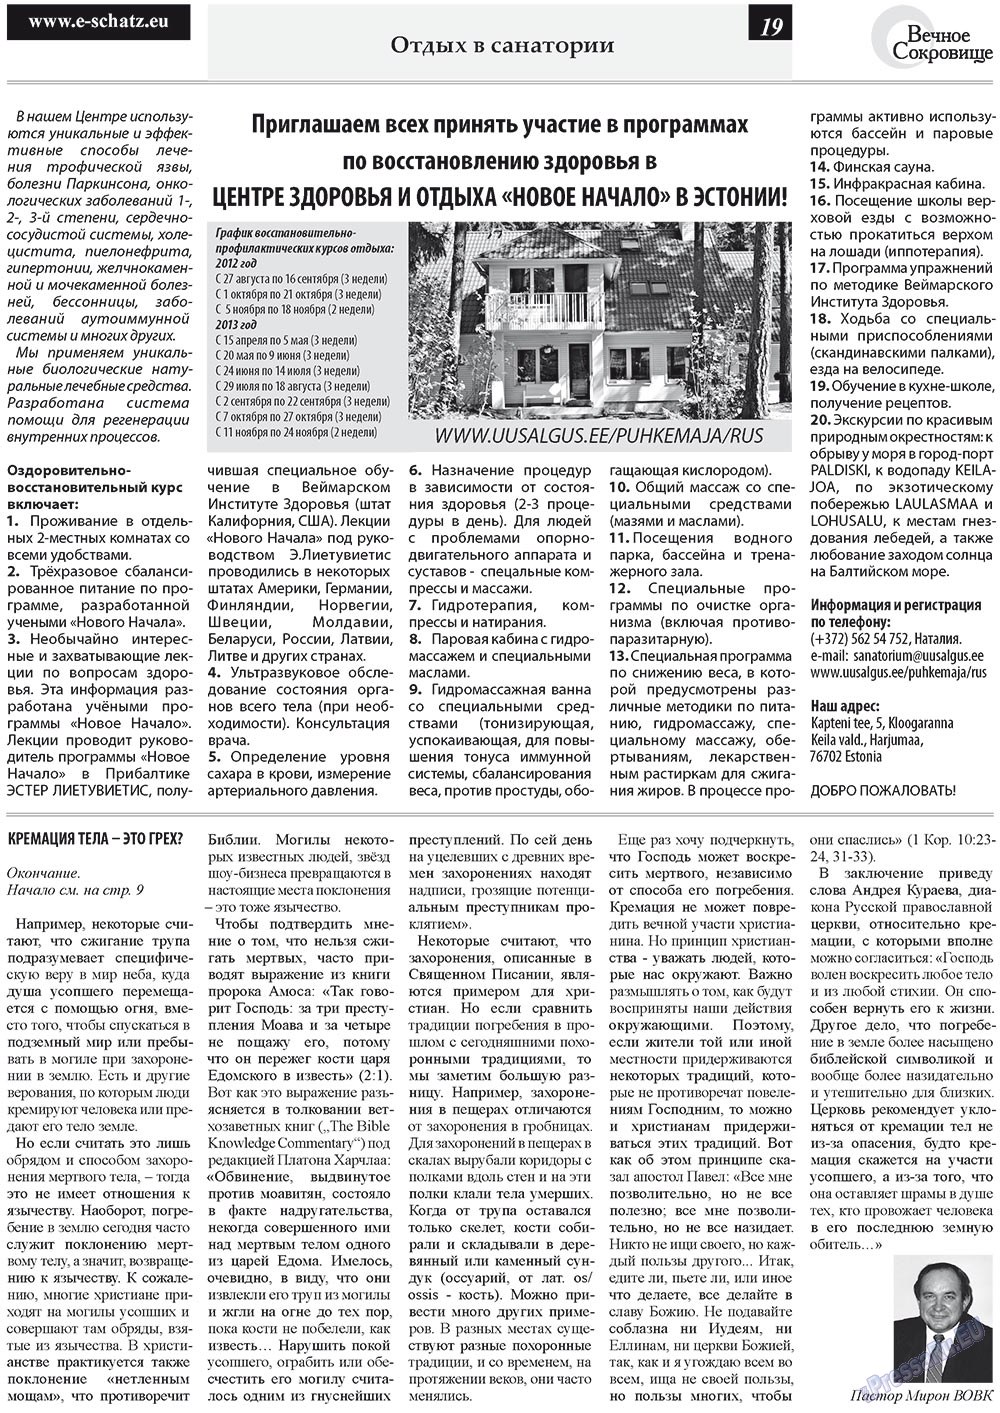 Вечное сокровище, газета. 2012 №4 стр.19